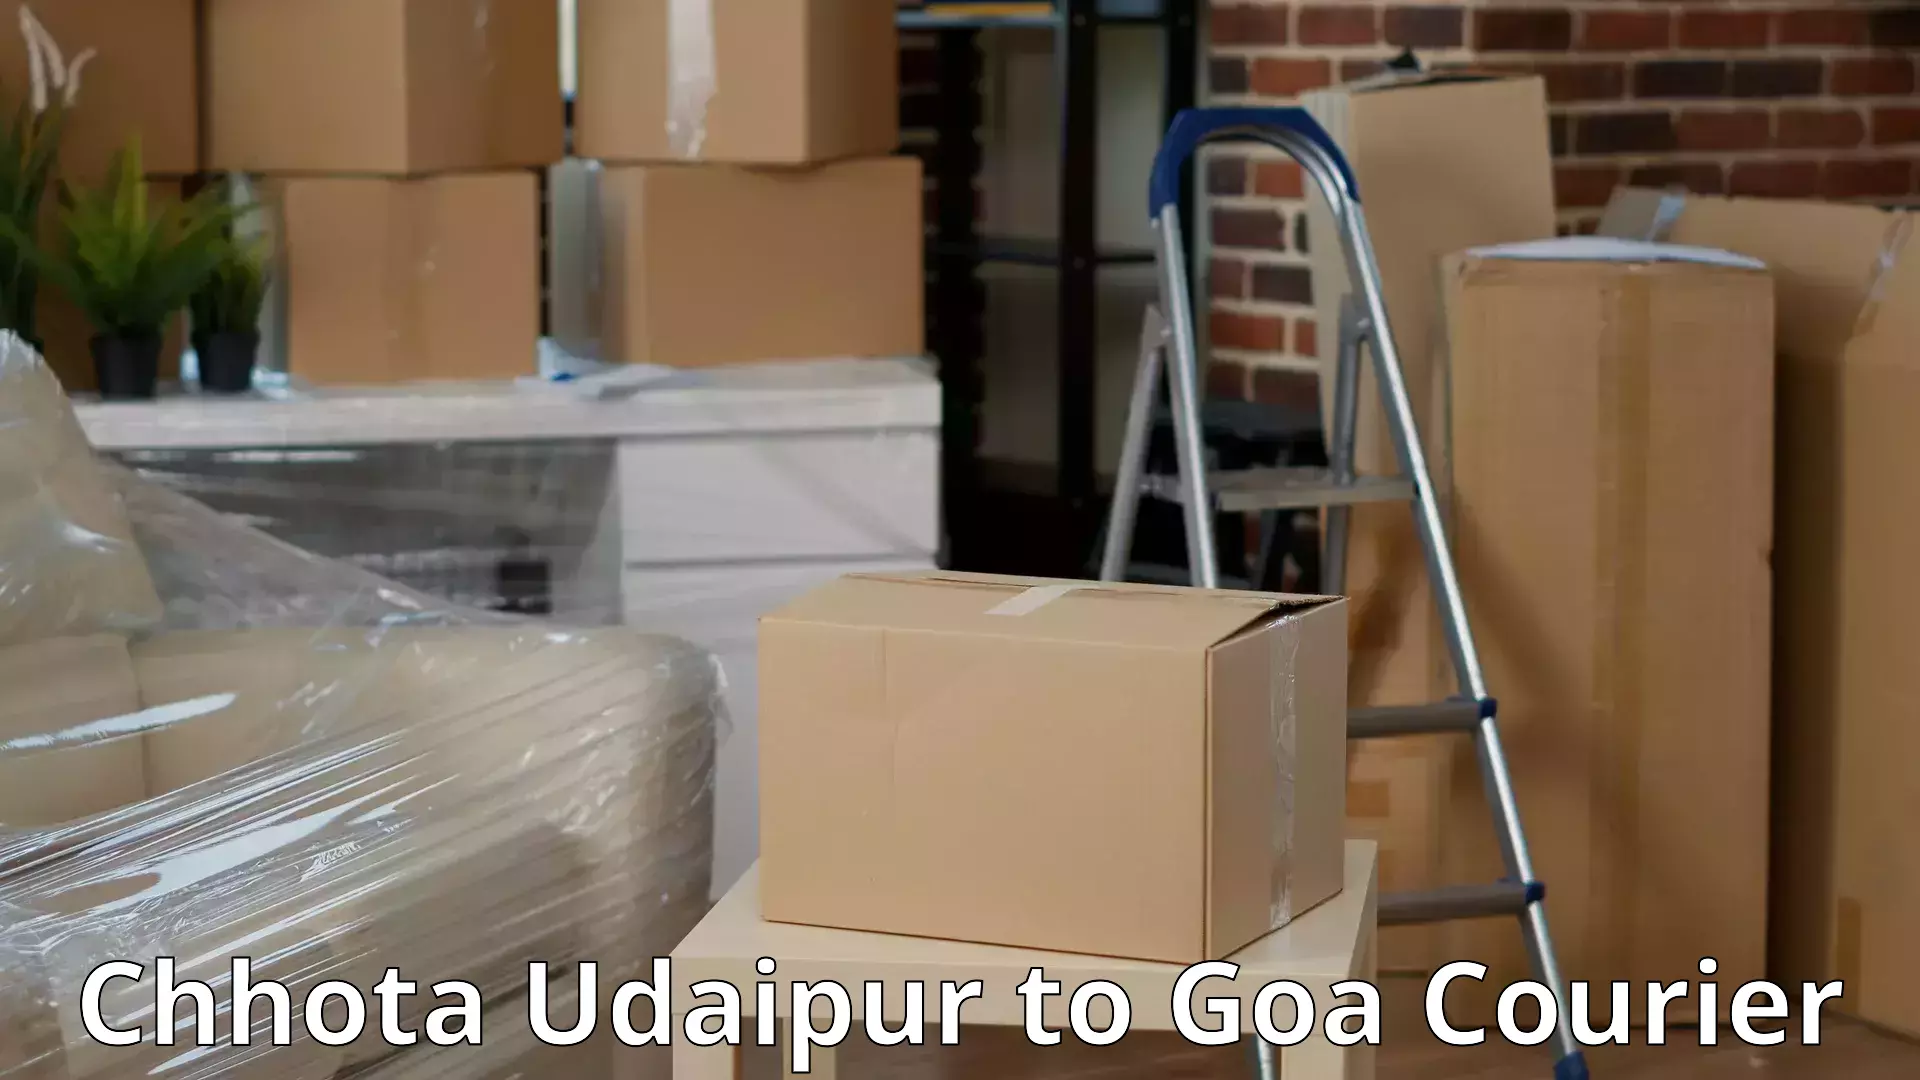 Home moving specialists Chhota Udaipur to Vasco da Gama